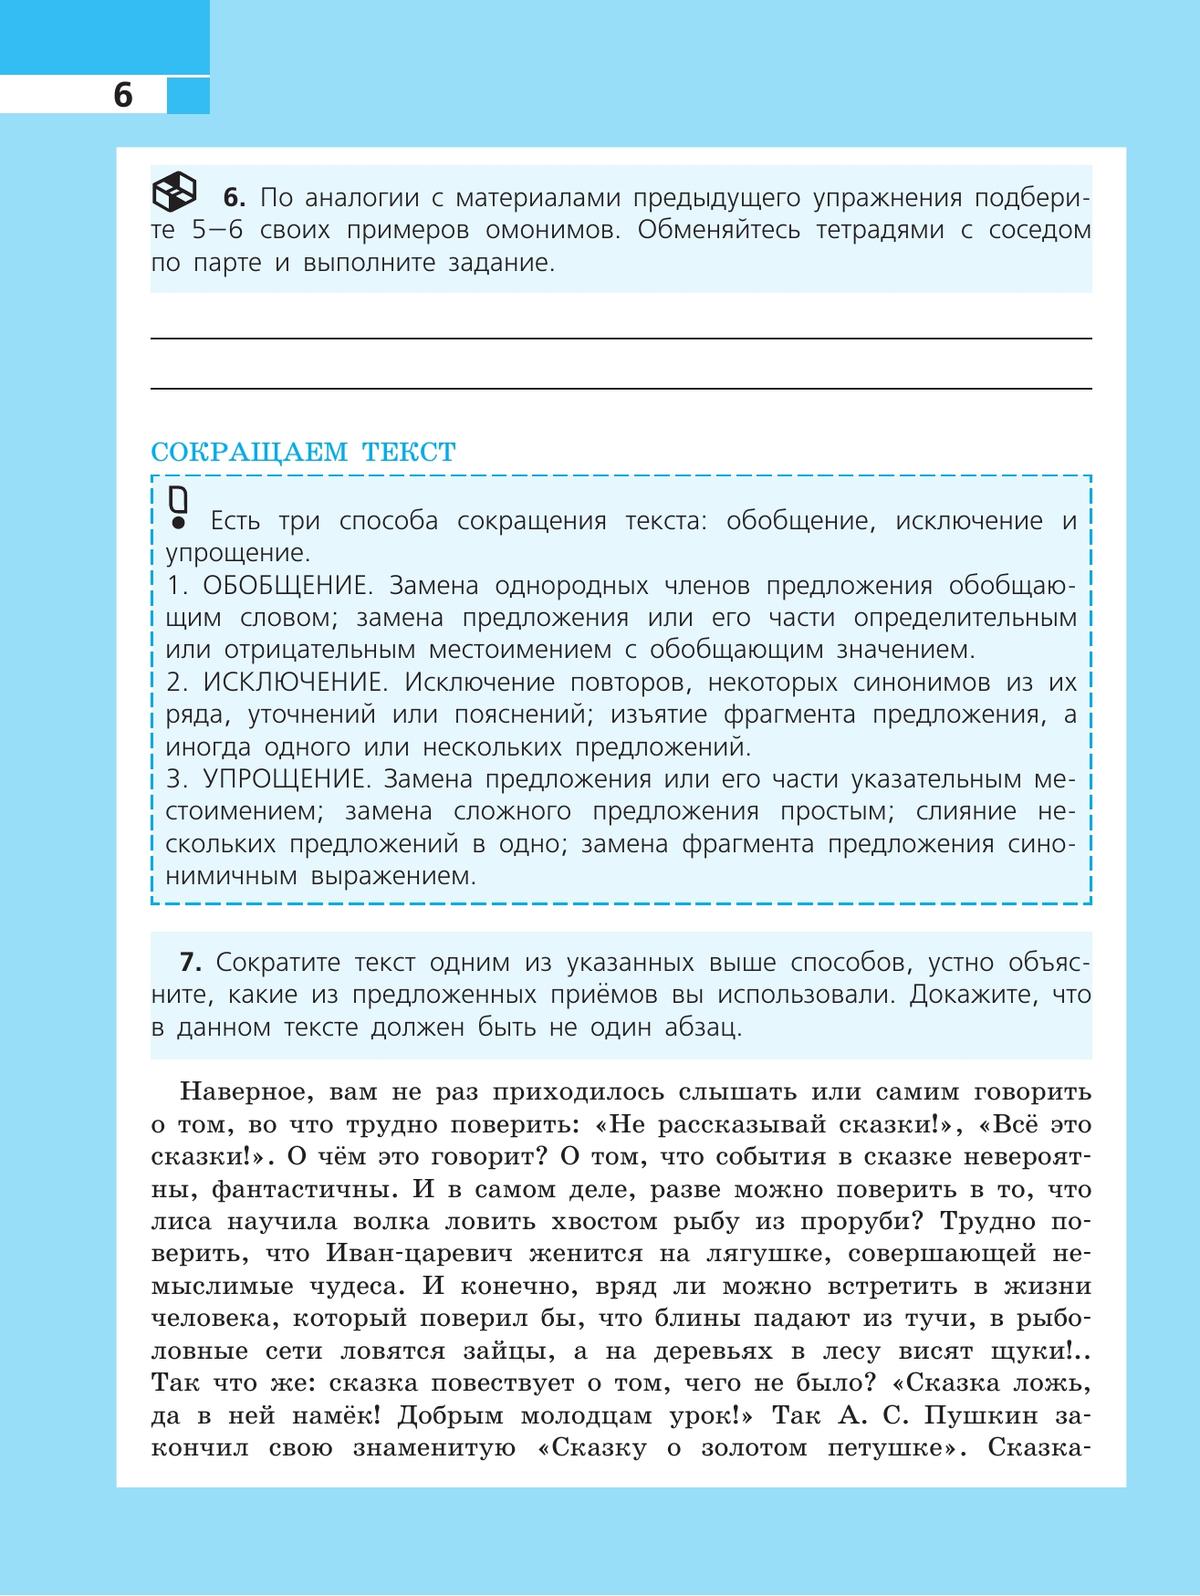 Русский язык. Рабочая тетрадь. 8 класс 7